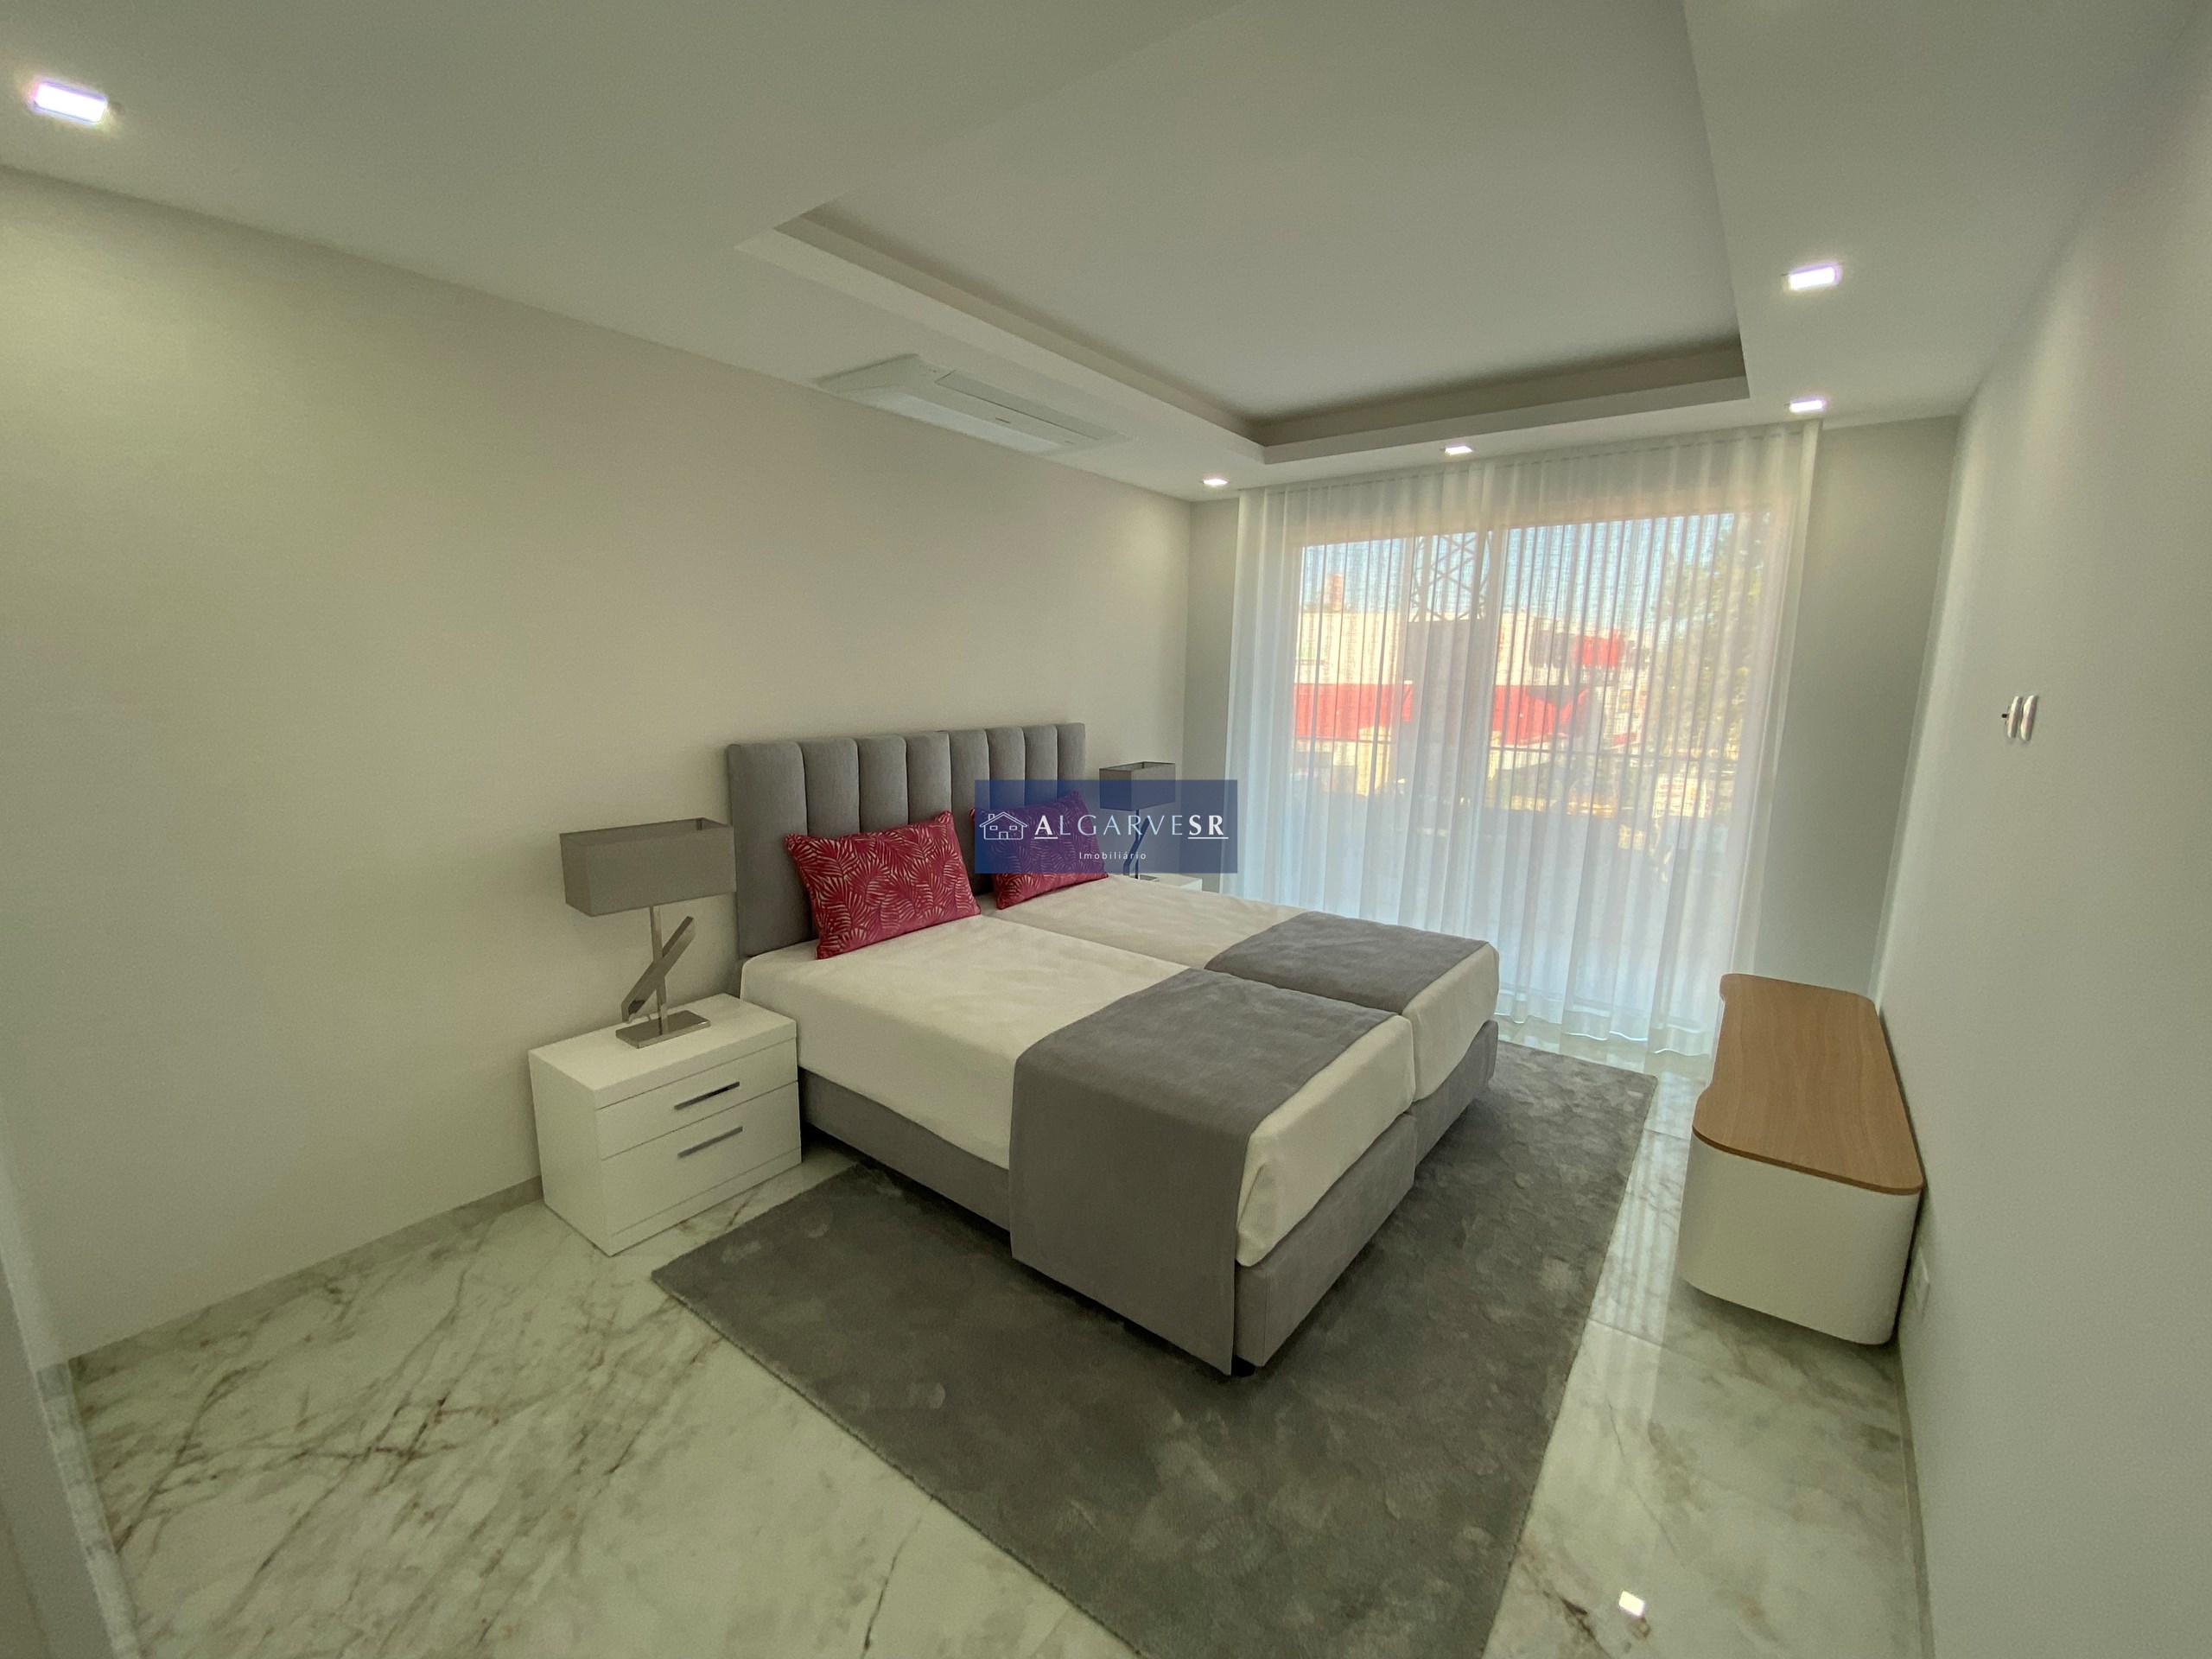 Lagos - ApartamentosT3 Novo em condominio de luxo c/ piscina